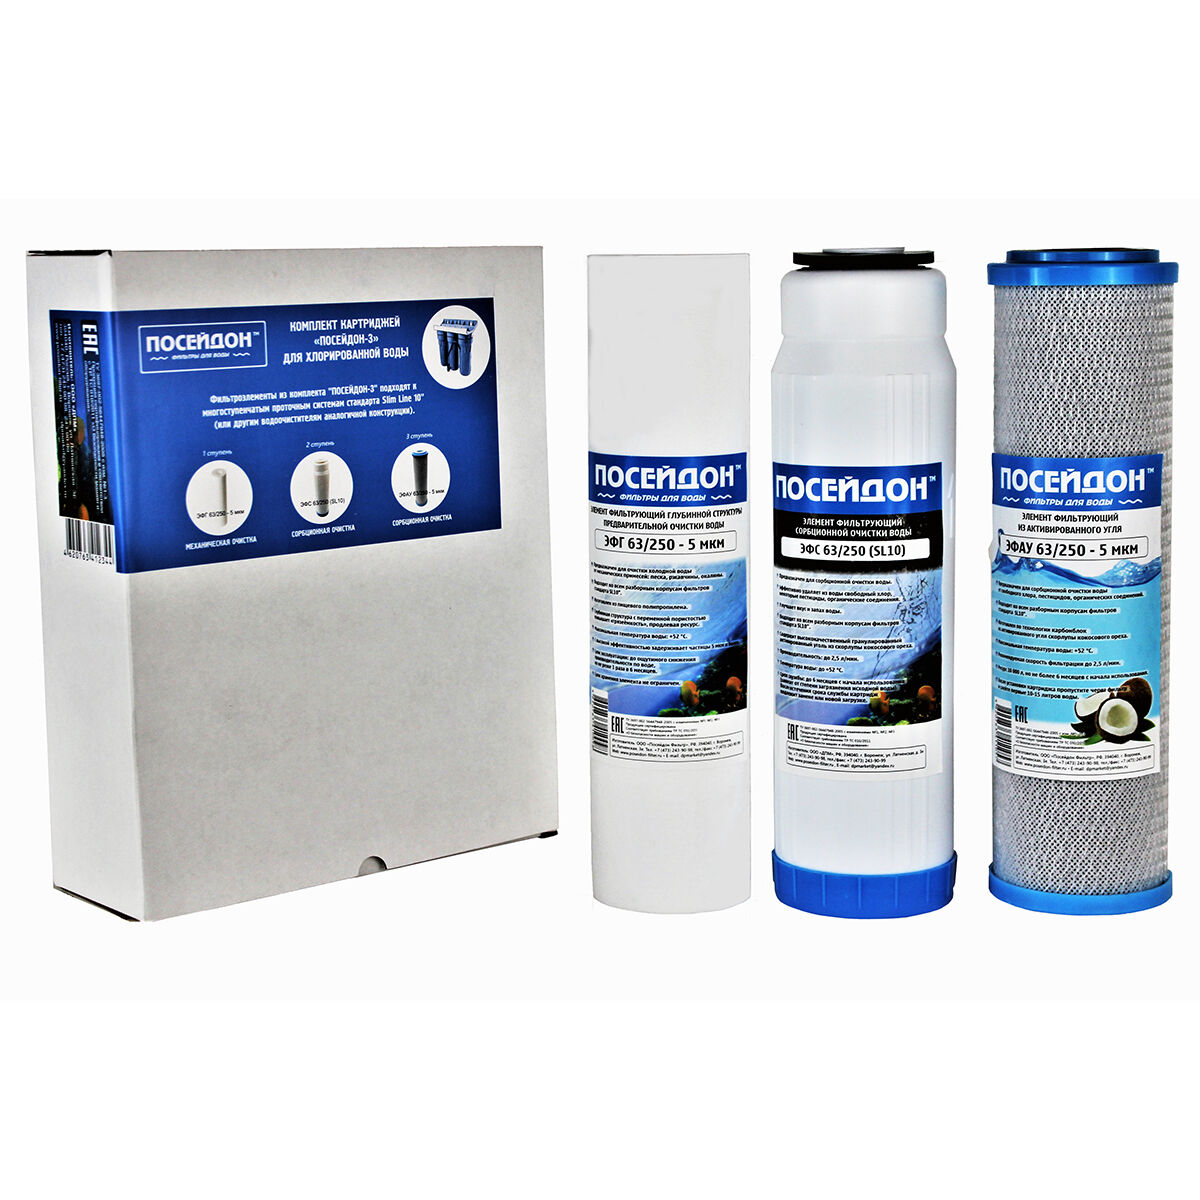 Комплект сменных фильтроэлементов для водоочистителя "Посейдон-3" для хлорированной воды (3 шт.) - ЭФГ + ЭФС + ЭФАУ